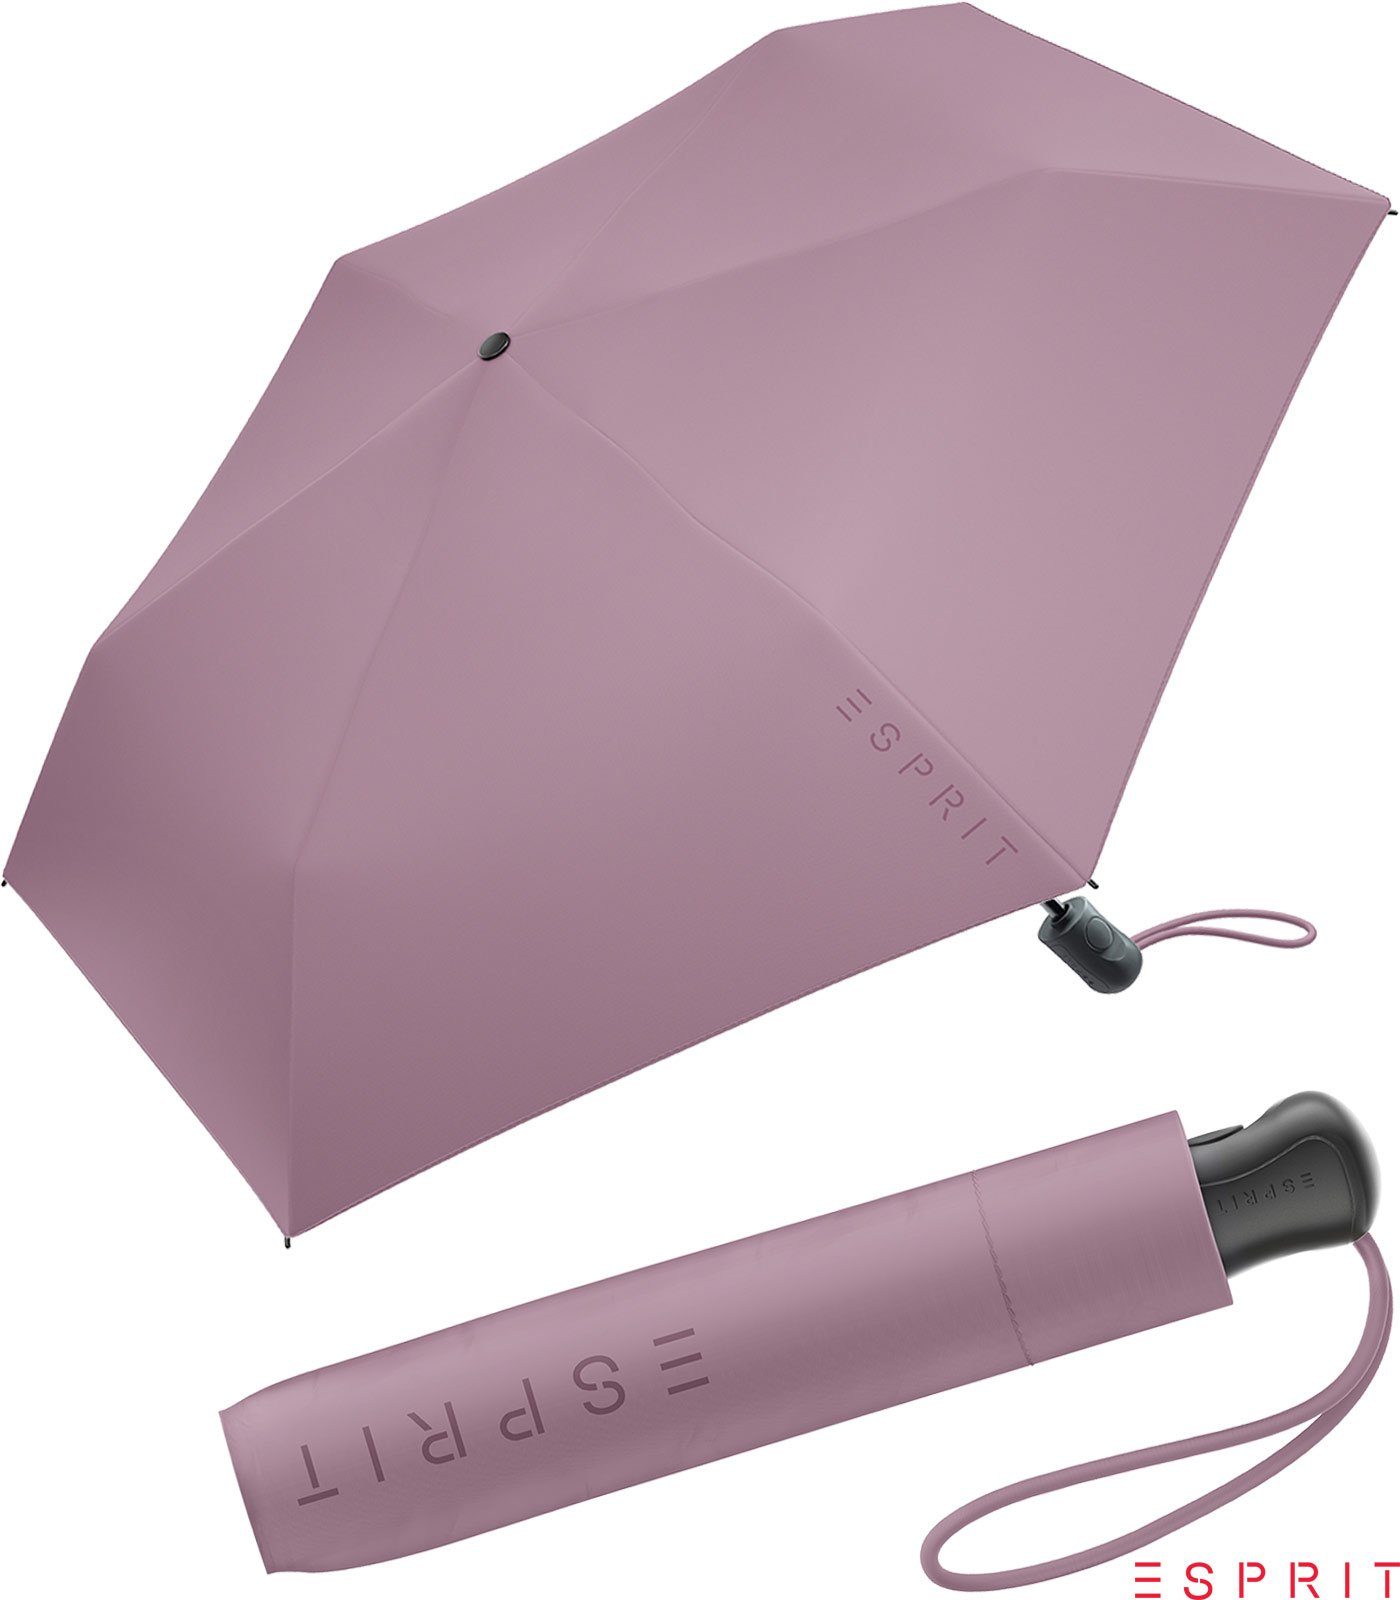 Esprit Taschenregenschirm Damen Easymatic Slimline Auf-Zu Automatik HW 2022 - dusky orchid, leicht, stabil, in den neuen Trendfarben berry